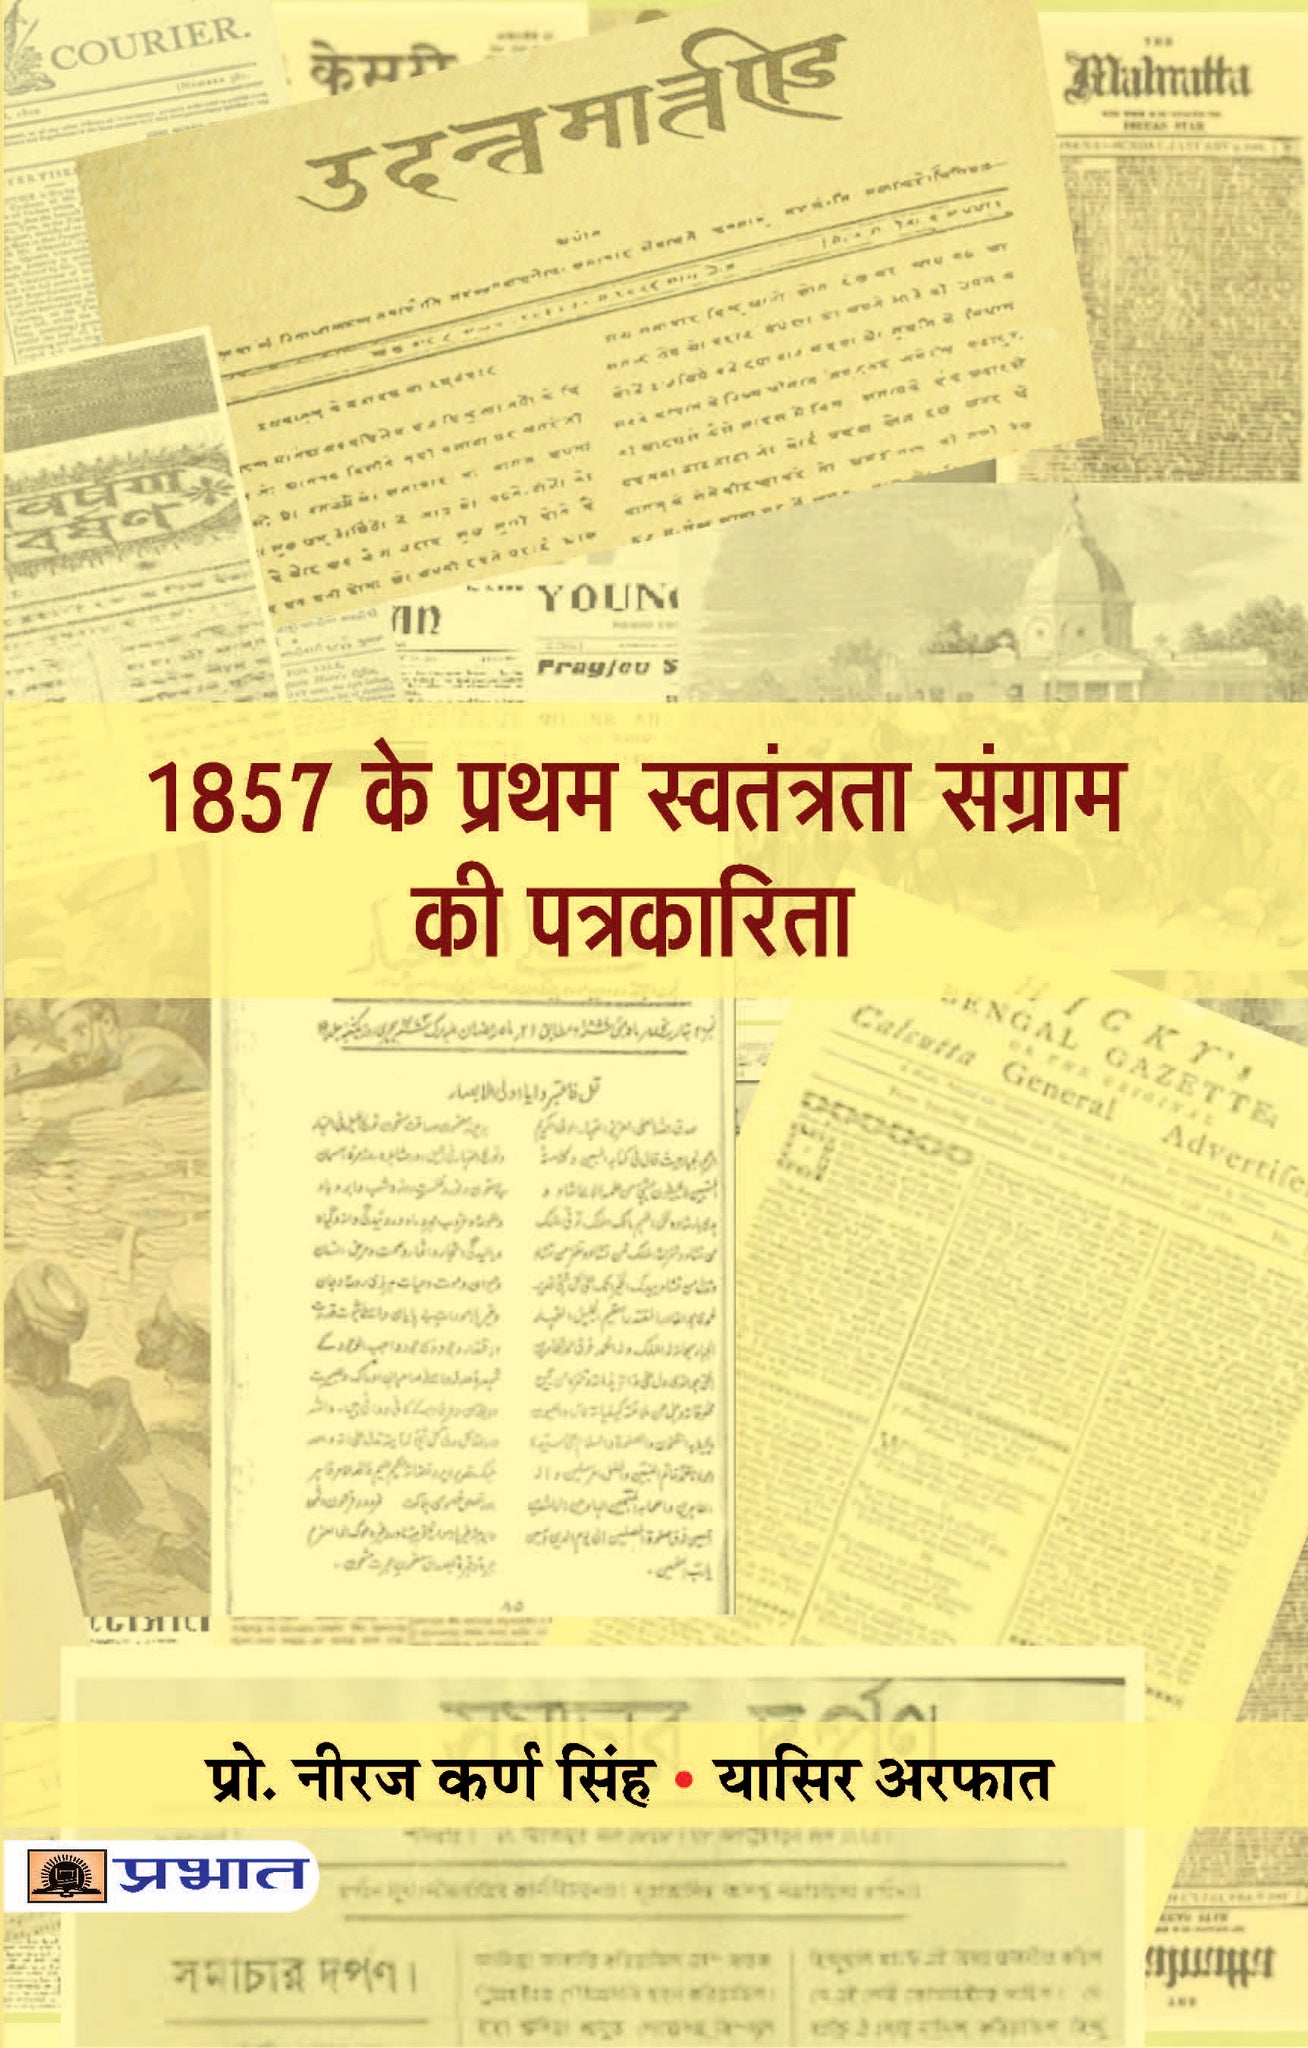 1857 Ke Pratham Swatantrata Sangram Ki Patrakarita